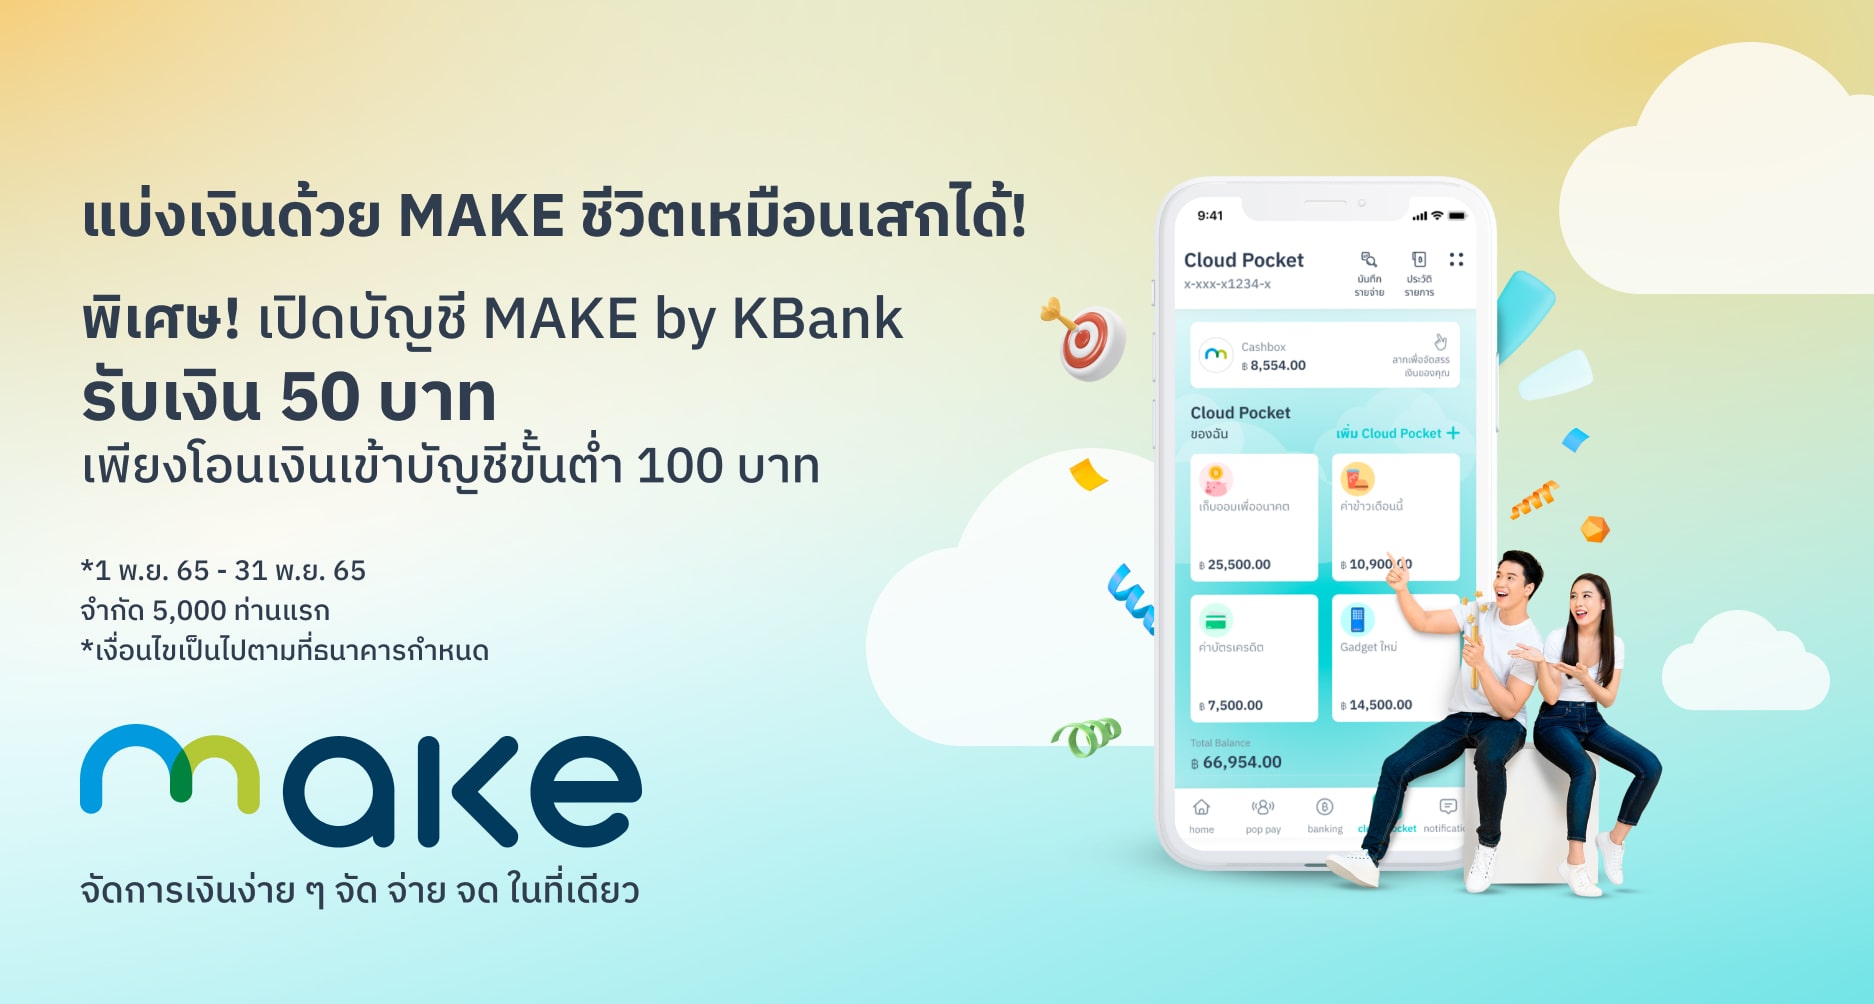 สมัคร Make และเติมเงิน 100 บาท รับเงินคืน 50 บาท | Make By Kbank